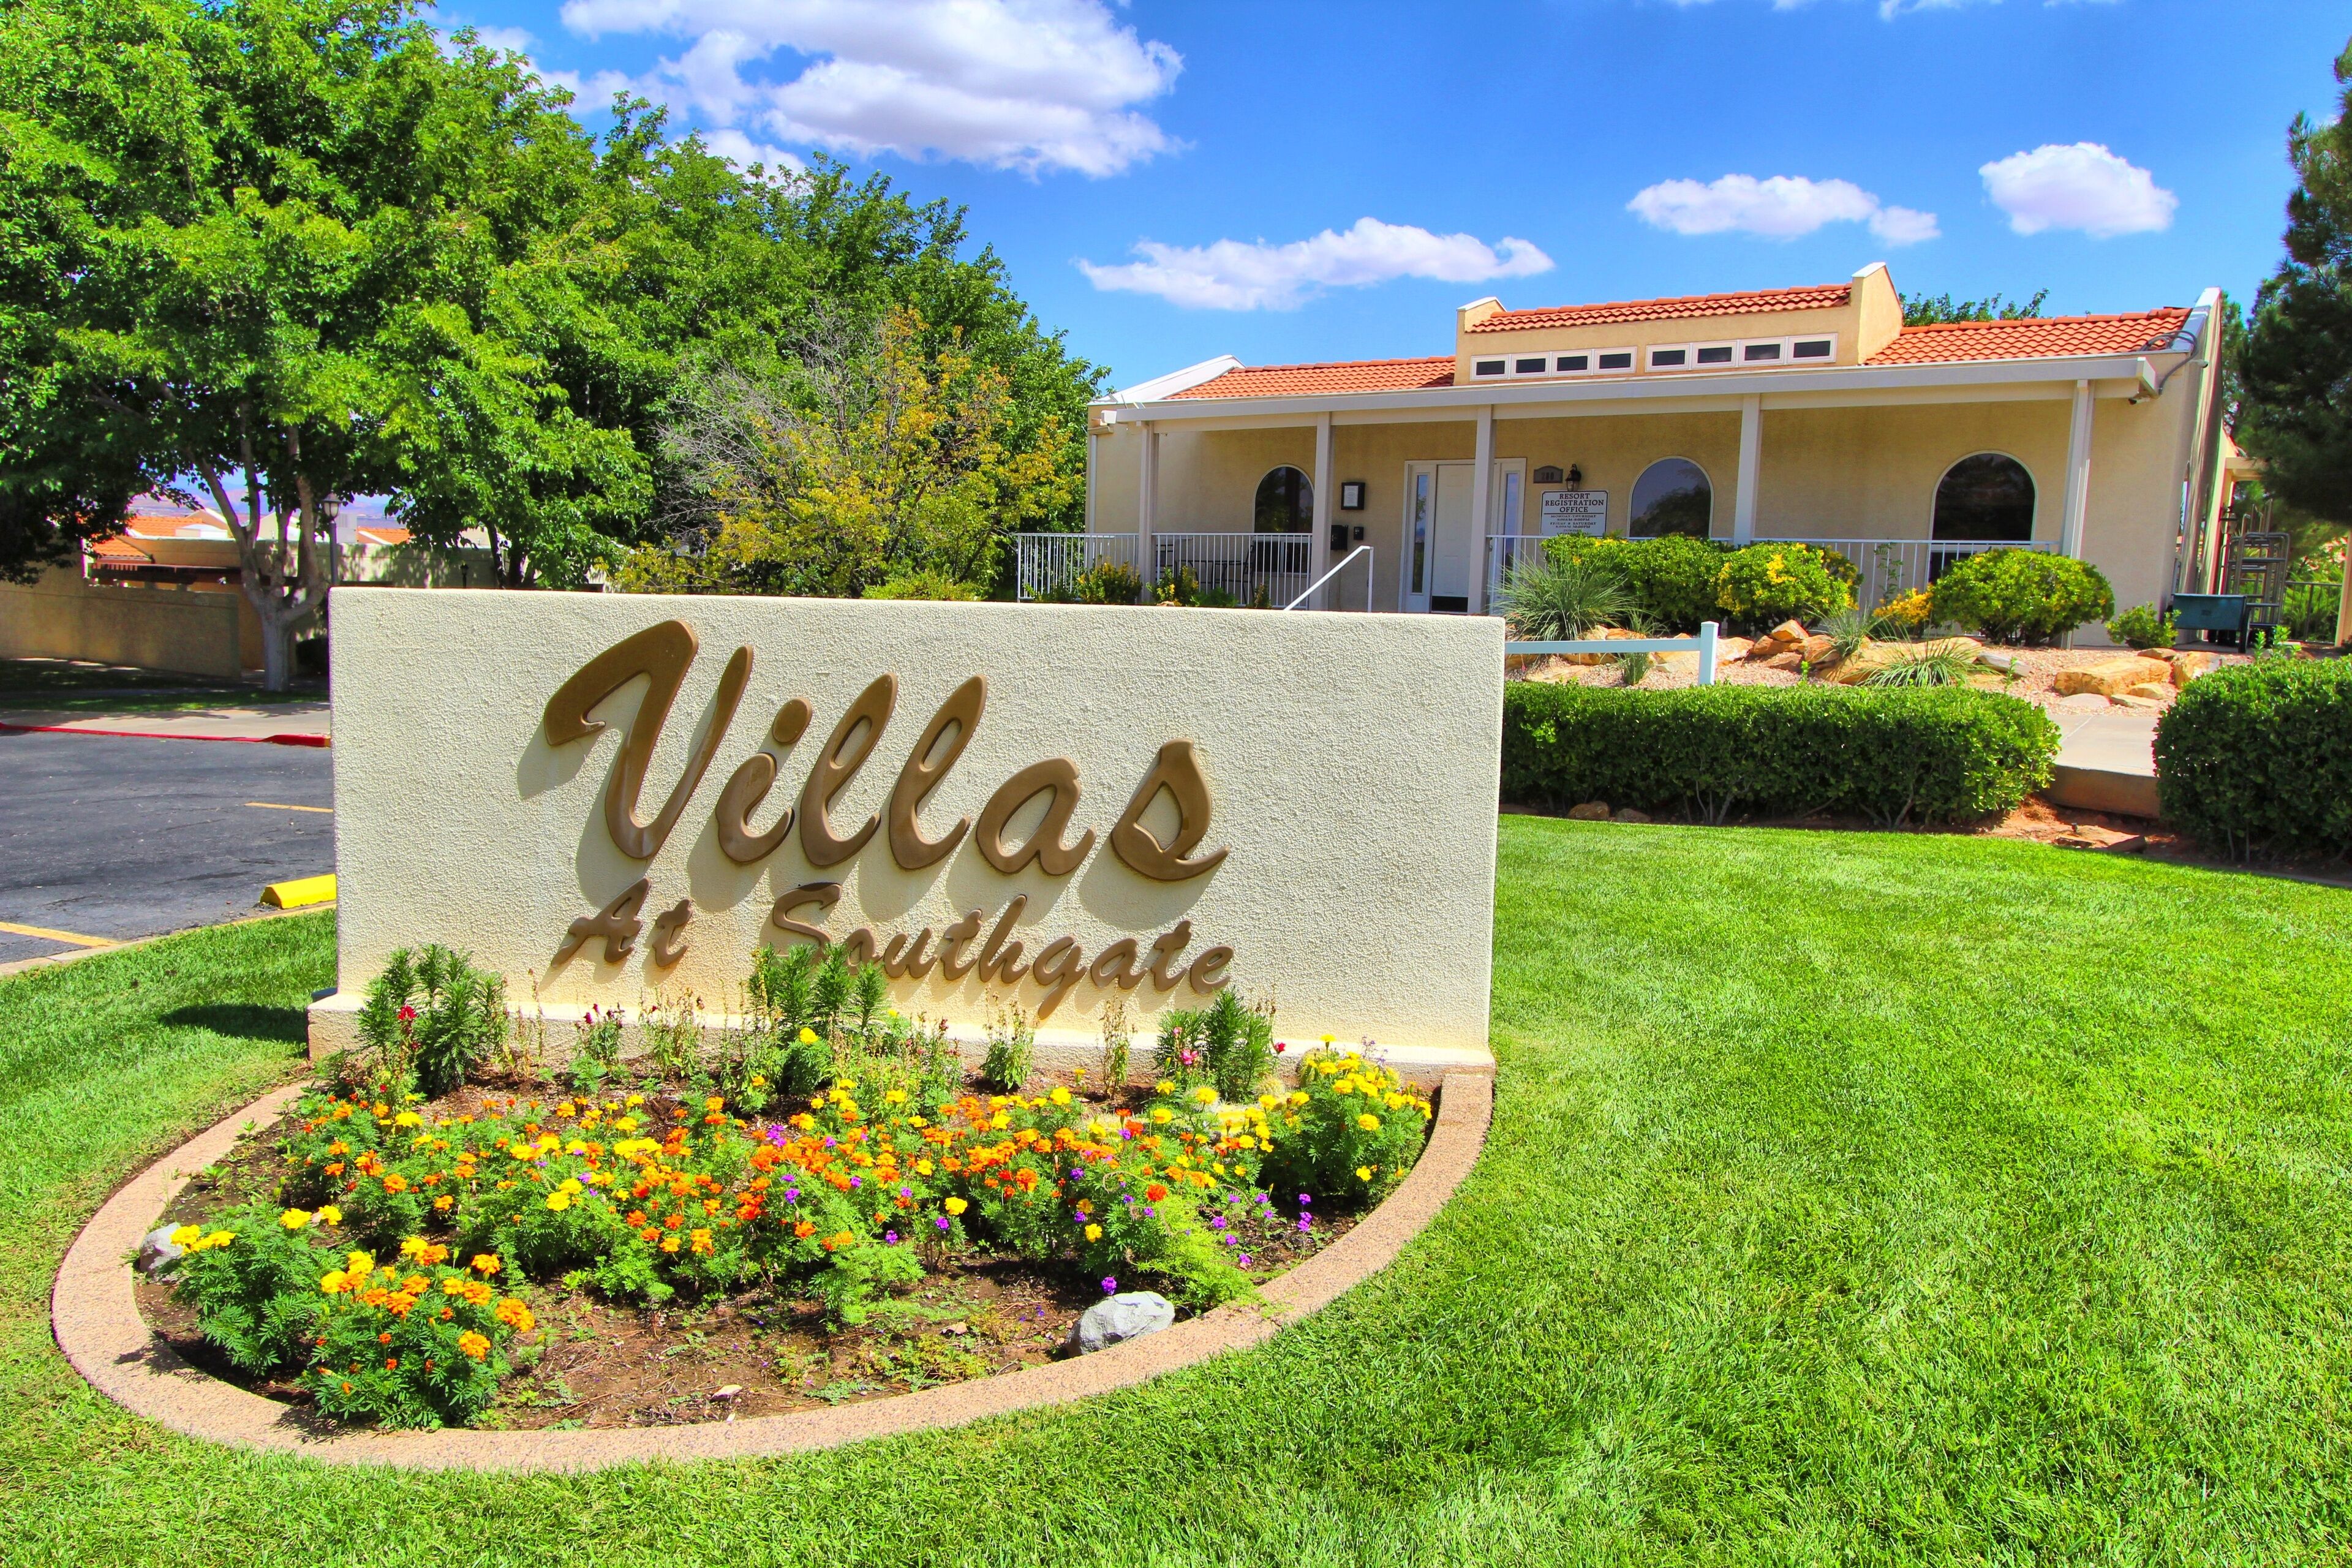 Multi Resorts Villas at Southgate